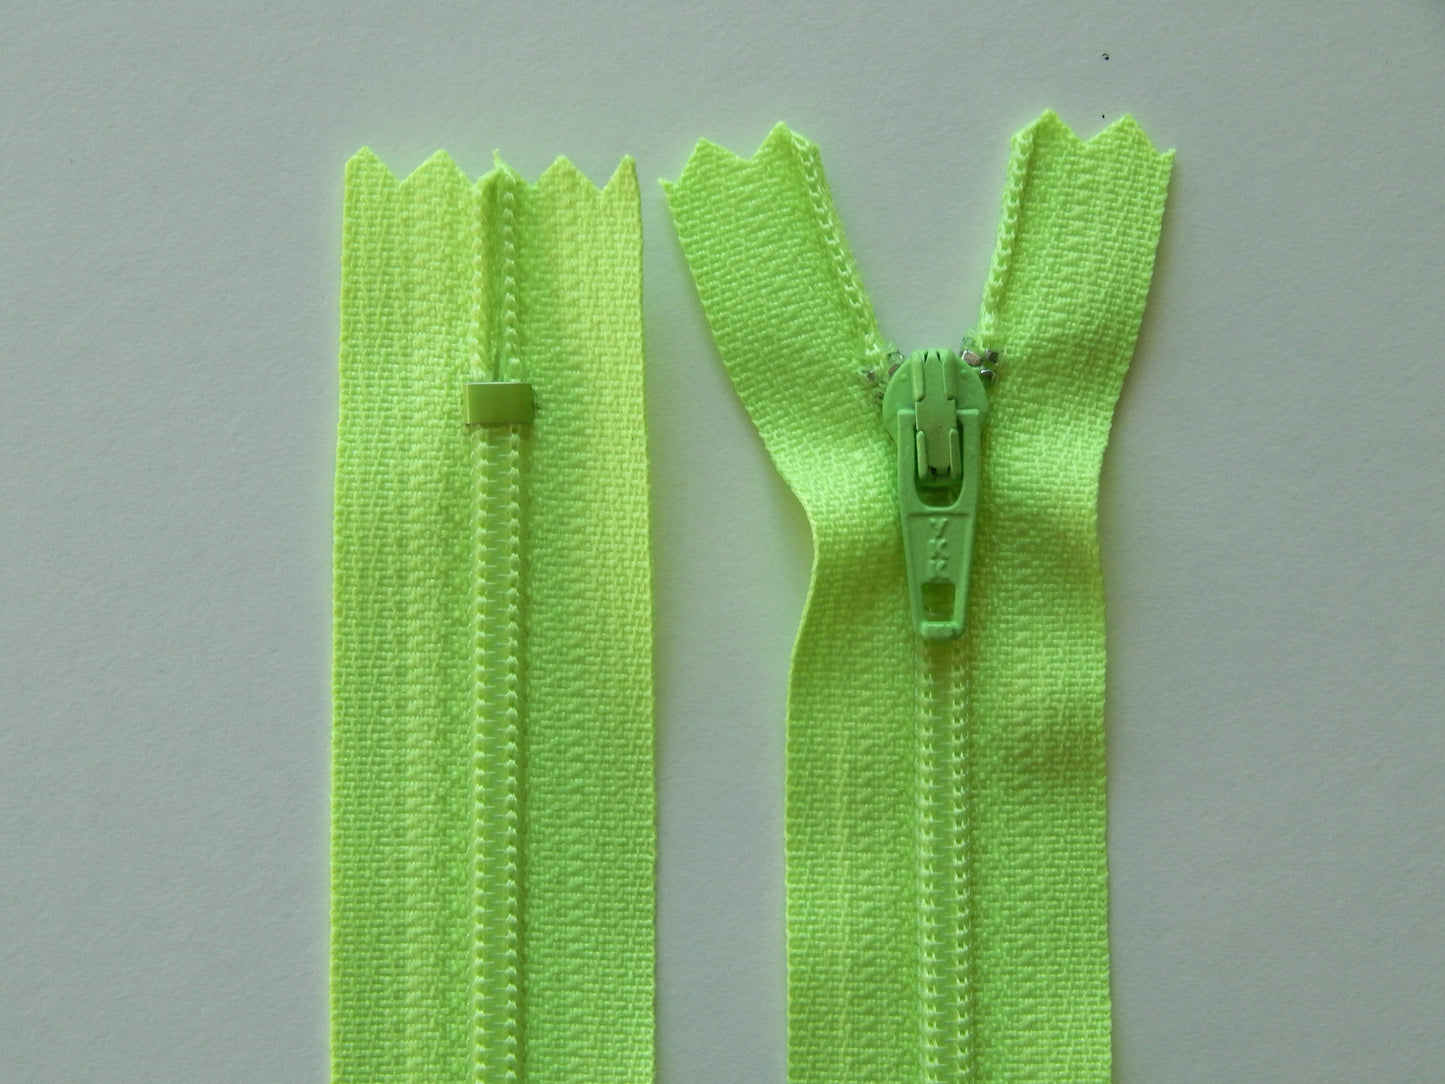 florescent green nylon dress zipper